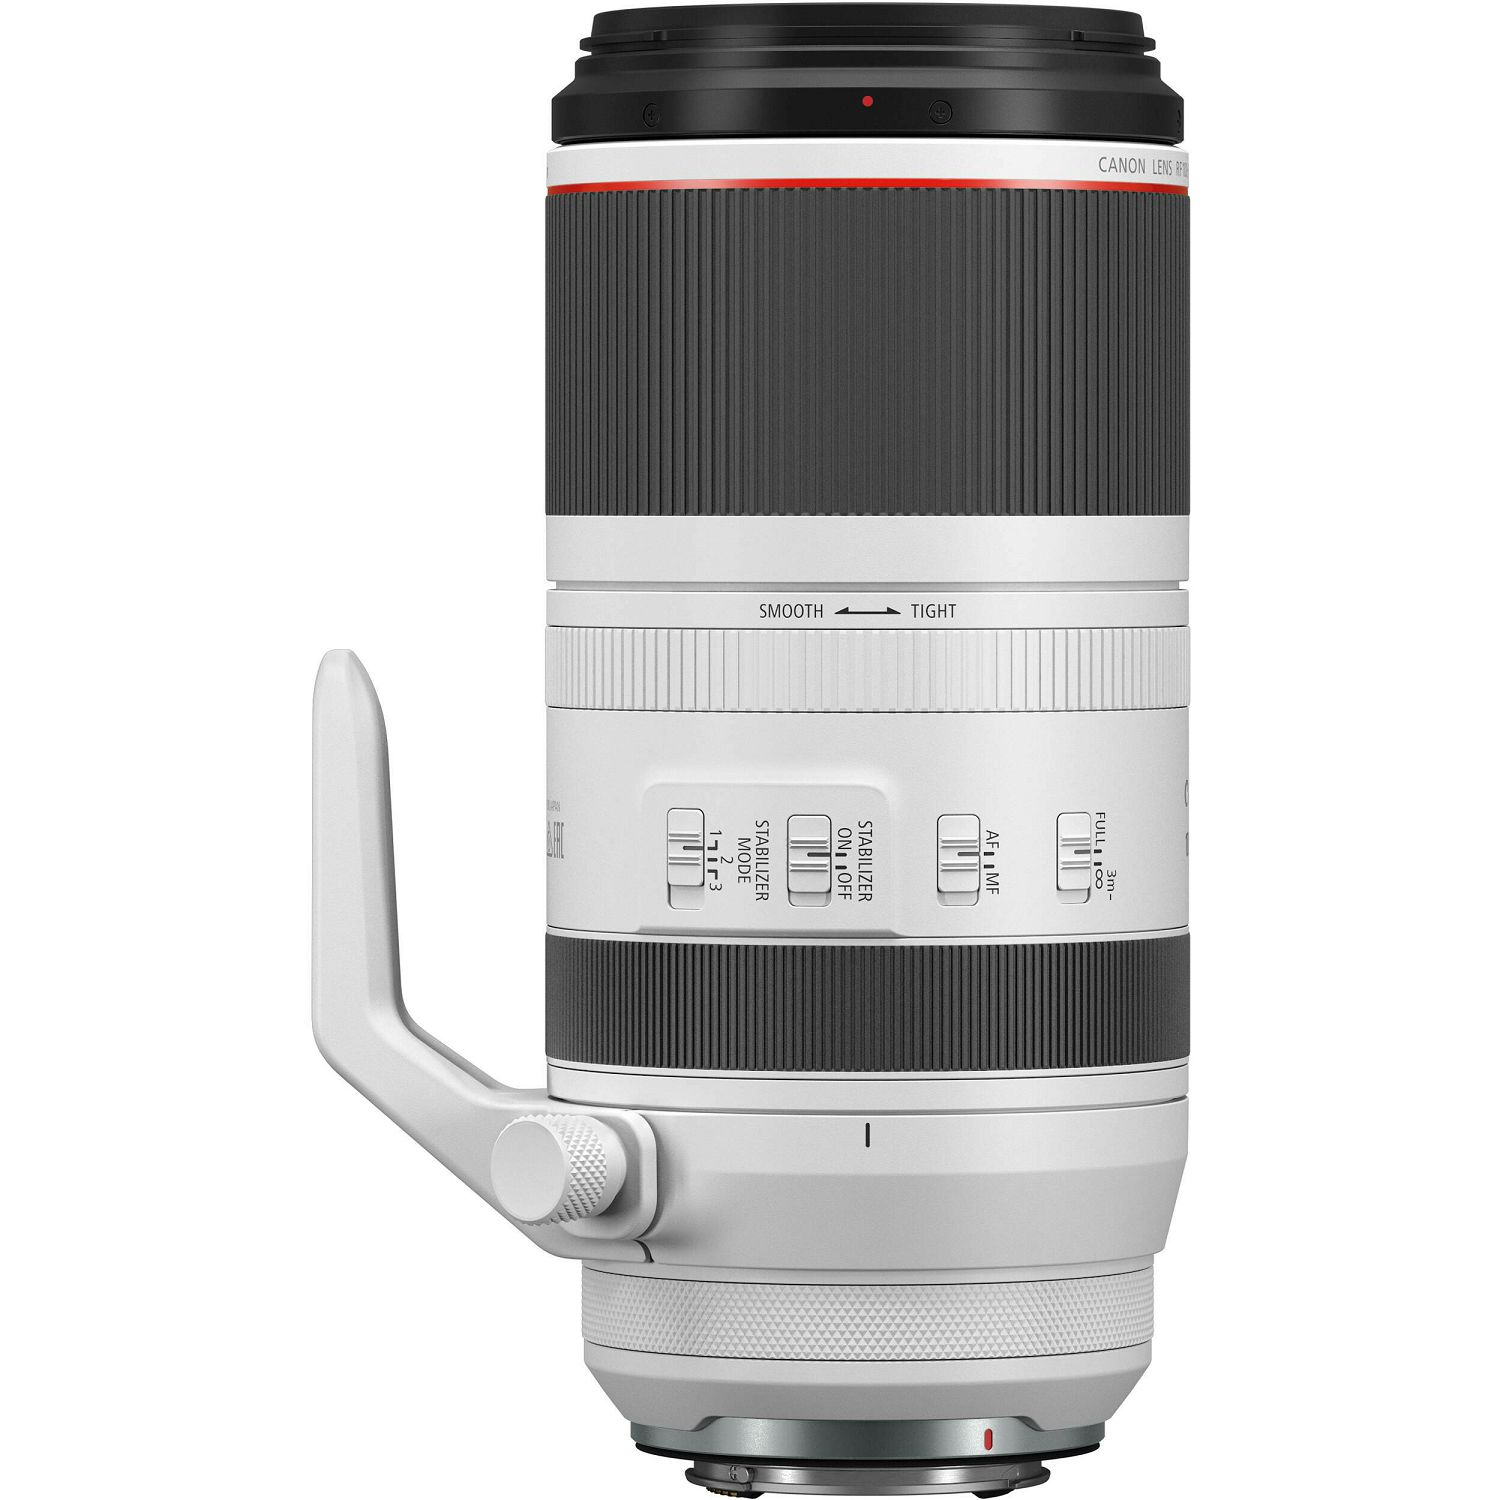 Canon RF 100-500mm f/4.5-7.1L IS USM telefoto objektiv (4112C005AA)